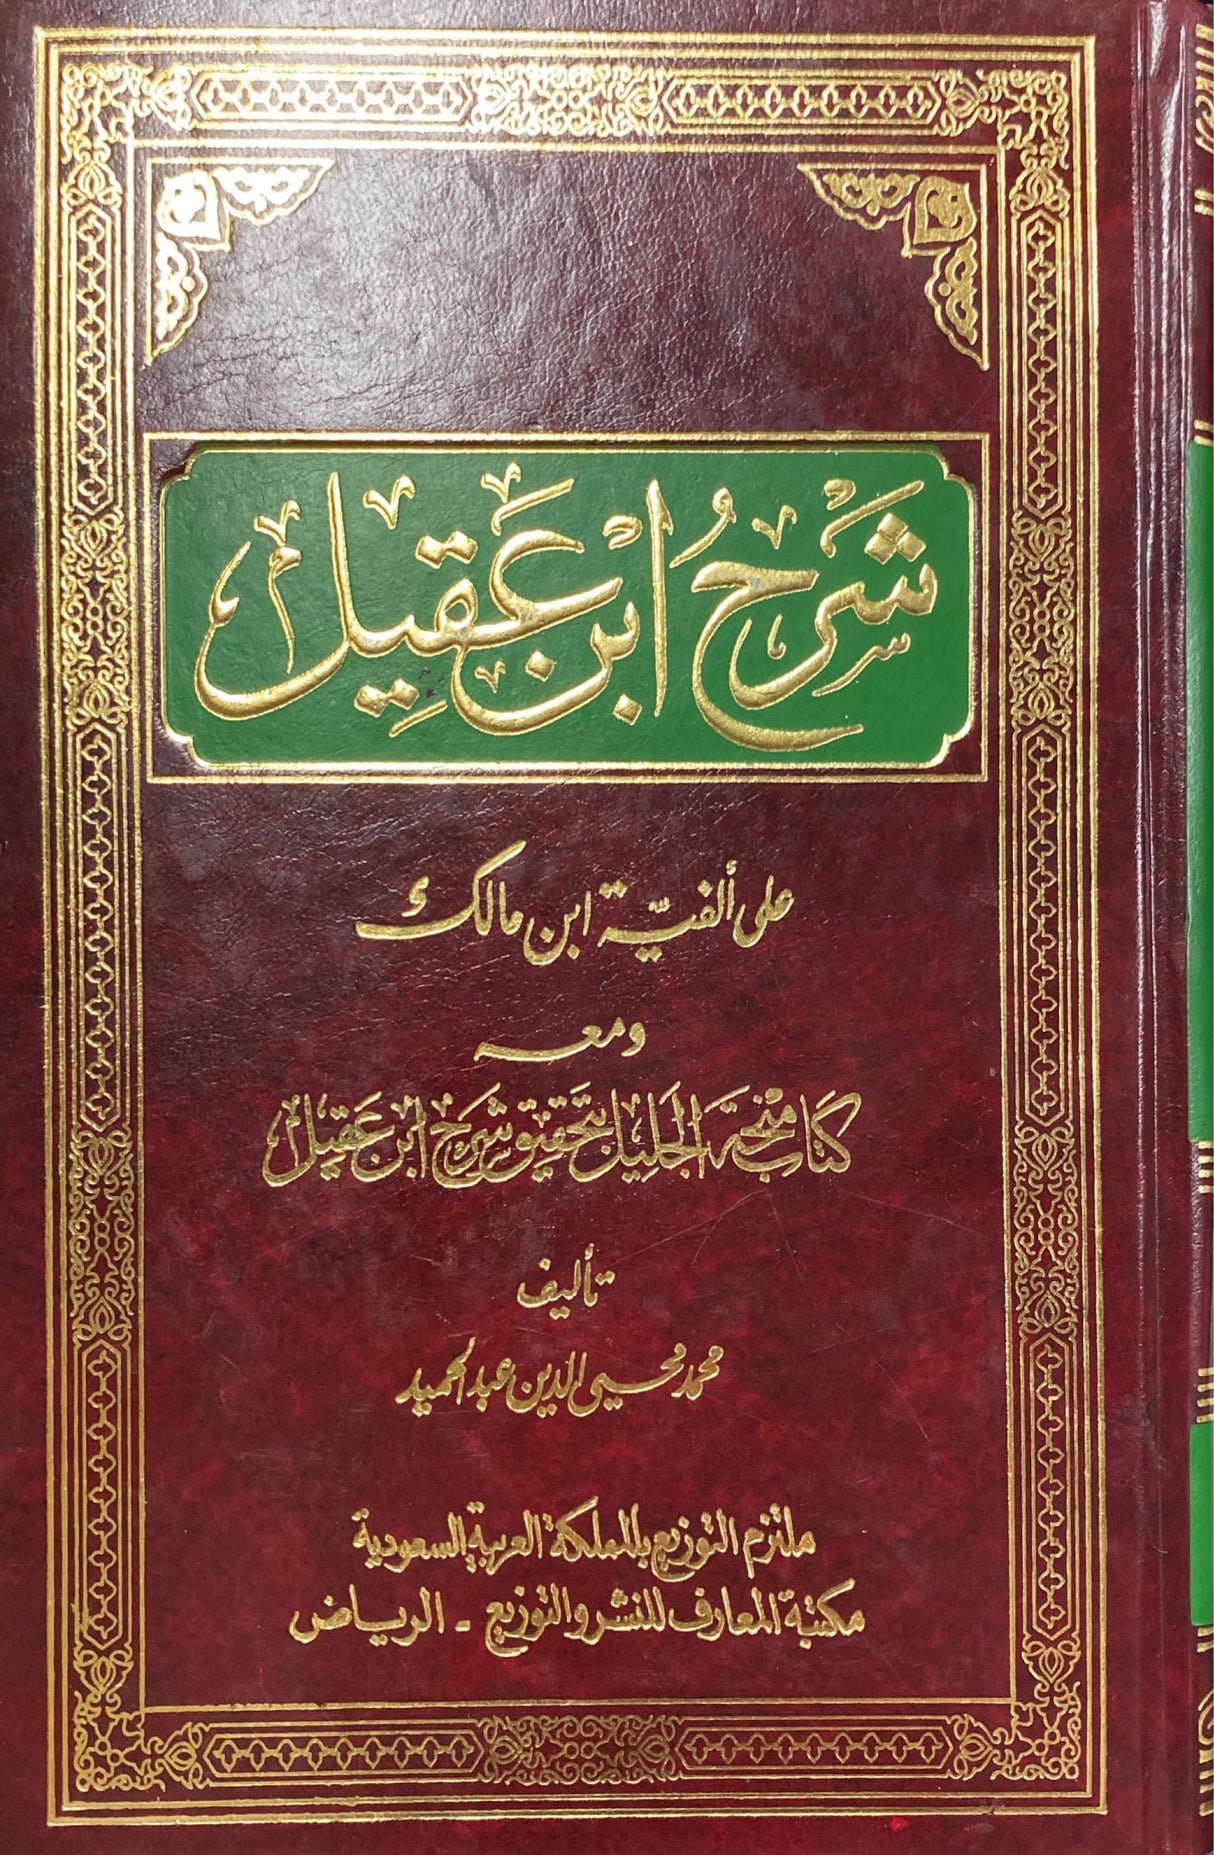 شرح ابن عقيل على الفية ابن مالك Sharh Ibn Aqeel Ala Alfiyati Ibn Maalik (1 Vol)